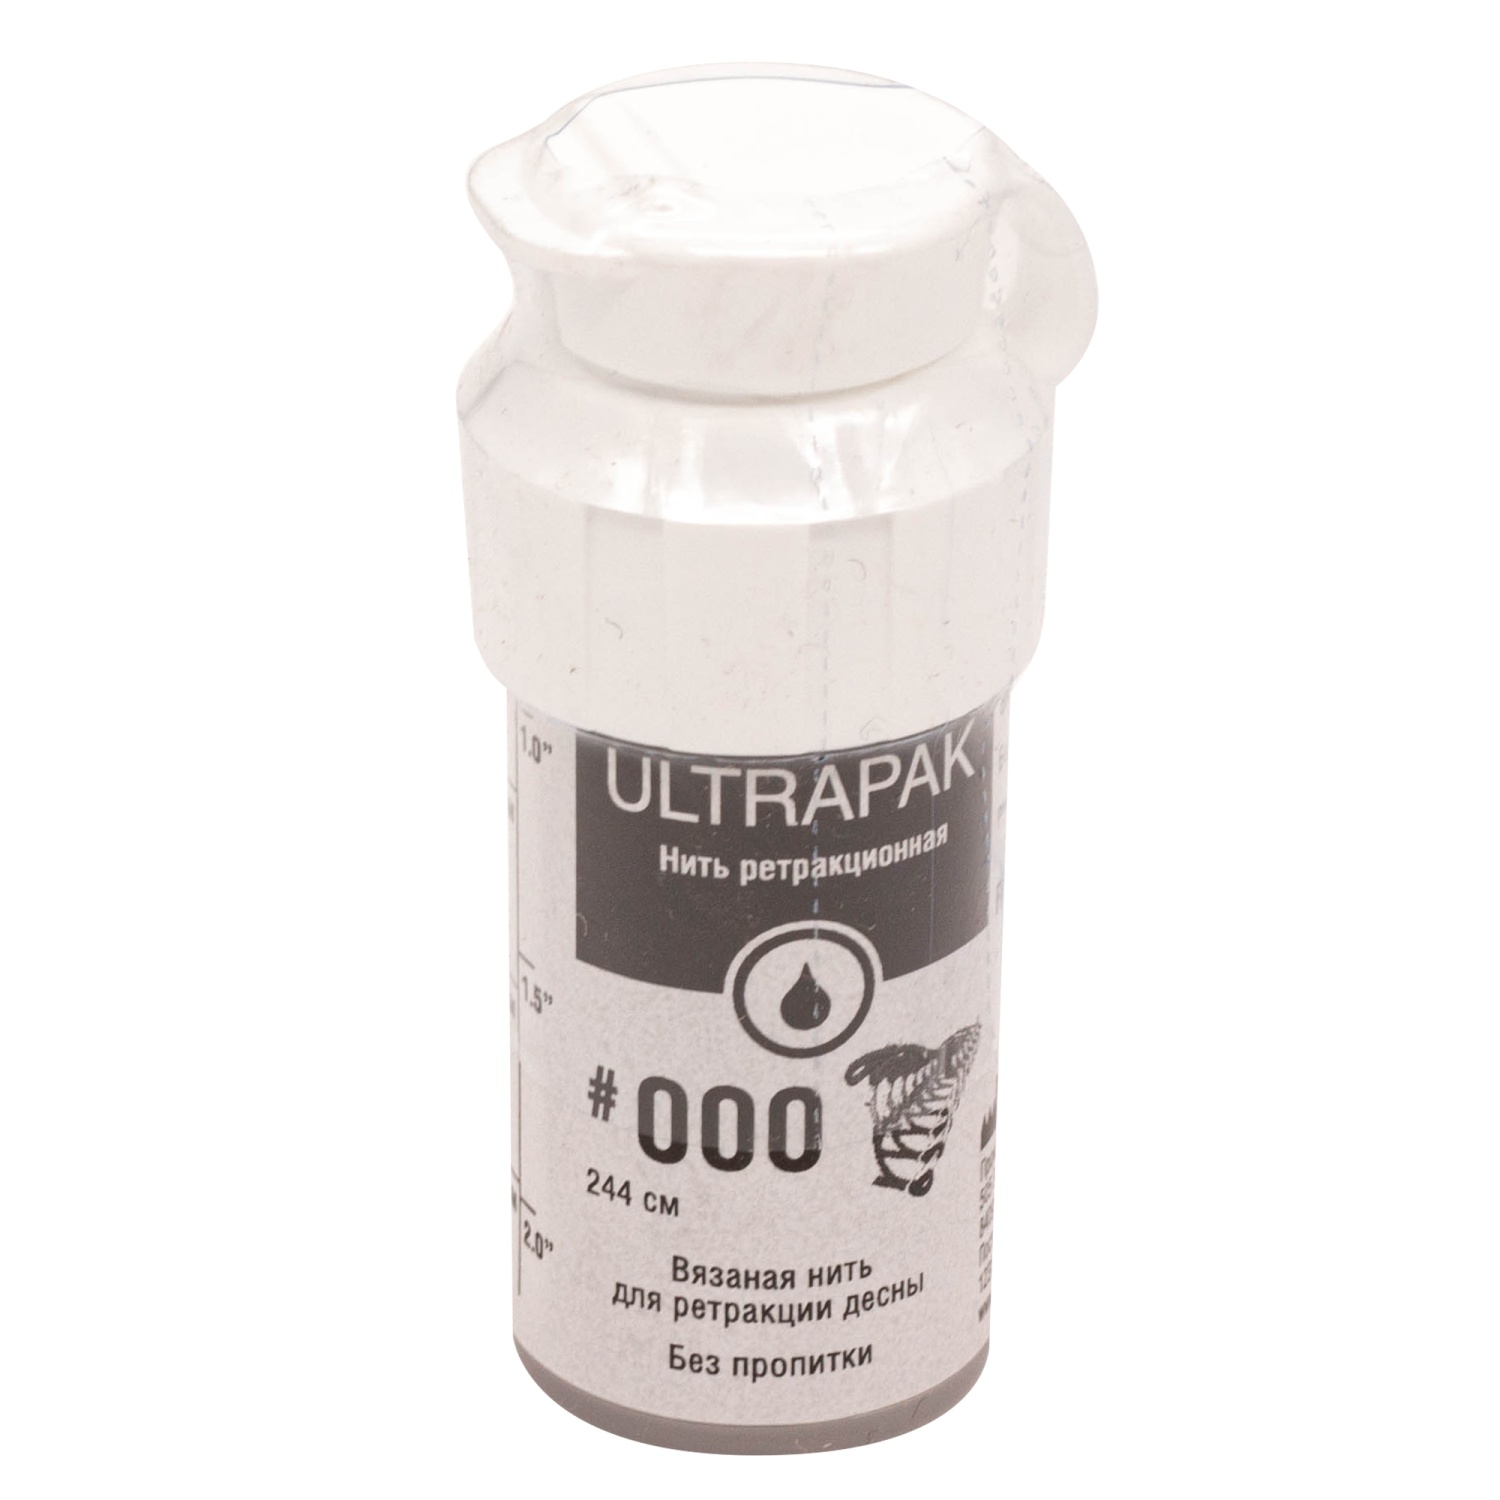 Ретракционная нить Ультра пак / Ultra Pack Cord 244см р-р 000 UL137 